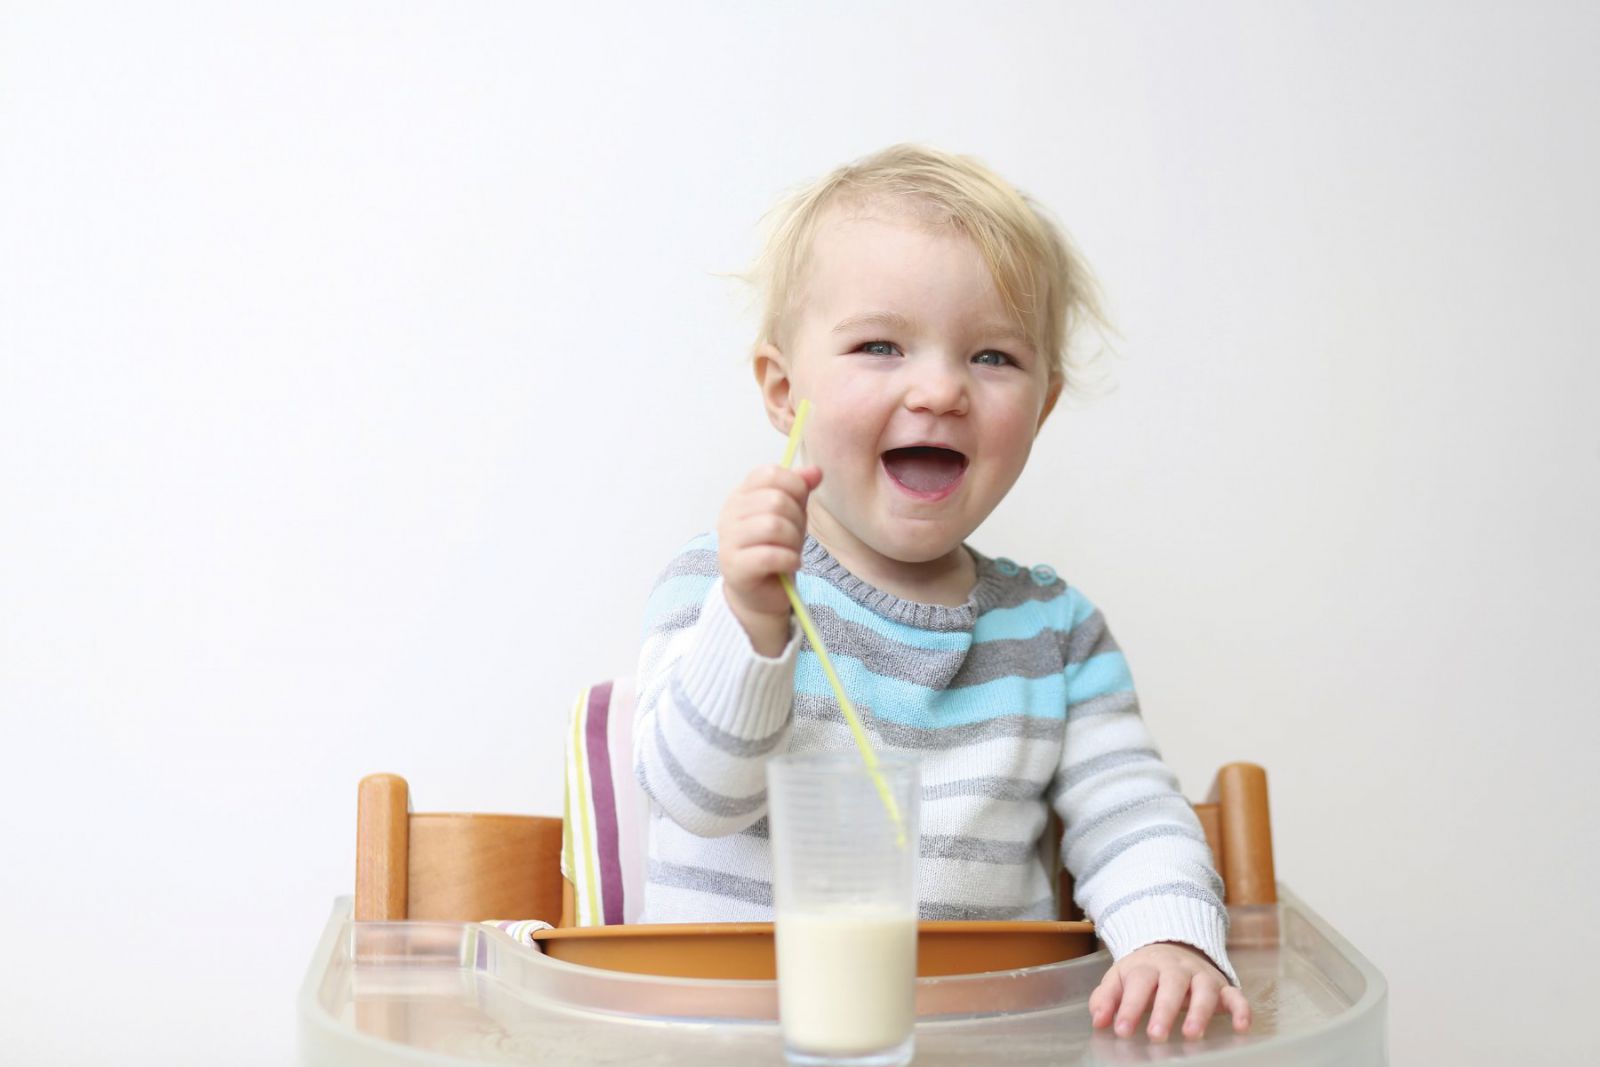 Mọi chuyên gia đều khuyến cáo nên nuôi con bằng sữa mẹ. Thế nhưng đối với những người cơ thể không đủ điều kiện để nuôi bé bằng sữa mẹ hoàn toàn thì sữa công thức là lựa chọn hàng đầu. Tuy nhiên, có nhiều mẹ vẫn chưa thực sự nắm rõ được về sữa công thức. Tham khảo ngay chia sẻ của IDP CORP để hiểu rõ hơn nữa nhé!  Sữa công thức là gì? Sữa công thức (còn có tên gọi là Baby formula) hay sữa bột trẻ em, được sản xuất để làm thức ăn cho trẻ sơ sinh và trẻ dưới 12 tháng tuổi. Sữa công thức có thành phần giống công thức hóa học của sữa mẹ nên có thể dùng để thay thế hoàn toàn hoặc một phần cho sữa mẹ.  Sữa công thức và những điều các mẹ cần biết  Click and drag to move Sữa thay thế sữa mẹ là sữa bột công thức 1 (là loại dành cho trẻ từ 0 - 6 tháng tuổi) gần giống với thành phần dinh dưỡng trong sữa mẹ nhằm cung cấp các dưỡng chất cần thiết để trẻ phát triển. Sữa bột công thức 1 hiện nay được cung cấp dưới nhiều hình thức khác nhau như:  Sữa bột: Thường được pha với nước trước khi cho trẻ uống; Sữa dạng lỏng: Thường được pha với một lượng nước tương đương; Sữa dùng ngay: Thường đắt hơn so với các loại sữa nói trên, có thể cho trẻ dùng ngay mà không cần phải qua các bước chế biến. Cách pha sữa công thức cho trẻ sơ sinh Bước 1: Rửa sạch ly, muỗng, bình sữa, núm vú và luộc kỹ trong nước sôi 10 phút. Bước 2: Tính toán lượng sữa công thức cho bé cần trong một lần bú. Bước 3: Lấy lượng nước vừa đủ theo lượng sữa đã tính toán ở bước 2. Bước 4: Dùng muỗng đo lường lấy lượng sữa bột theo hướng dẫn trên hộp sữa, không lấy đầy muỗng mà phải gạt ngang muỗng lường bằng dụng cụ gạt (dao hoặc cán muỗng sạch) Bước 5: Pha sữa công thức cho bé với nước nóng khoảng 40 độ C. Nếu nước quá nóng thì cần phải để nguội đến nhiệt độ tương đương nhiệt độ cơ thể (37 độ C) và không nên cho bé ăn ngay. Nên cho trẻ ăn từ từ để tránh hiện tượng bị sặc. Sữa công thức và những điều các mẹ cần biết  Click and drag to move Nhu cầu dùng sữa công thức cho trẻ sơ sinh Từ khi sinh đến 1 tháng: 60 ml/lần, 8 – 10 lần/ngày, tổng lượng sữa khoảng 480 ml/ngày; Từ 1 tháng đến 2 tháng: 90 ml/lần, 7 – 10 lần/ngày, tổng lượng sữa khoảng 630 ml/ngày; Từ 2 tháng đến 4 tháng: 120 ml/lần, 6 – 10 lần/ngày, tổng lượng sữa khoảng 720 ml/ngày; Từ 4 tháng đến 6 tháng: 150ml/lần, 6 – 8 lần/ngày, tổng lượng sữa khoảng 900 ml/ngày. Chọn sữa công thức cho bé như thế nào? Sự đa dạng sản phẩm sữa công thức cho bé trên thị trường hiện nay giúp các bậc cha mẹ dễ dàng tìm kiếm cho con mình một loại sữa công thức phù hợp. Tuy nhiên, điều quan trọng là làm thế nào để phân biệt và chọn lựa đúng sản phẩm mà trẻ đang cần. Để tránh nhầm lẫn và có thể an tâm với sản phẩm mình đã chọn cho con, các bậc cha mẹ cần lưu ý:  Kiểm tra nhãn hiệu, bao bì sản phẩm có phải hàng thật hay không; Kiểm tra kỹ hàm lượng các thành phần của sữa công thức cho bé bao gồm: chất đạm, chất béo, DHA, ARA, vitamin... ở trên nhãn để đảm bảo rằng bé không chỉ phát triển tốt về chiều cao, cân nặng, mà còn có thể phát triển trí não, củng cố hệ miễn dịch còn non nớt của trẻ - những yếu tố quyết định trong việc mang lại cho trẻ một nguồn dinh dưỡng chất lượng trong những năm tháng đầu đời; Sản phẩm sữa công thức cho bé được sản xuất dựa trên các tiêu chuẩn quốc tế sẽ là một sản phẩm có độ tin cậy cao. Do đó, cha mẹ cũng cũng nên lựa chọn các sản phẩm đã được các tổ chức dinh dưỡng và an toàn thực phẩm công nhận về an toàn thực phẩm, quản lý chất lượng, chỉ tiêu hàm lượng...;   Hiện tại IDP CORP là một trong những đơn vị cung cấp sữa công thức uy tín tại HCM mà các mẹ có thể an tâm lựa chọn cho bé. Các dòng sản phẩm sữa tại IDP CORP đa dạng, phù hợp với nhiều độ tuổi và thể trạng khác nhau:  Nefesure Titan Plus HMO là sản phẩm dinh dưỡng chuyên biệt dành cho trẻ suy dinh dưỡng, thấp còi từ 01 - 10 tuổi. Nefesure Horu IQ Grow cho bé cao lớn hơn, khỏe mạnh hơn, thông minh hơn Nefesure Ojisan Platinum phát triển về chiều cao và cân nặng tăng sức đề kháng của trẻ Nên tìm hiểu và tham vấn từ bác sĩ dinh dưỡng để có những thông tin cần thiết về nhu cầu dinh dưỡng của trẻ làm cơ sở lựa chọn sữa công thức cho bé. Đặc biệt là những người mẹ có con sinh non, nhẹ cân hoặc có vấn đề về đường tiêu hóa, rất cần một công thức dinh dưỡng đặc biệt, chọn đúng sản phẩm cần thiết để giúp trẻ bắt kịp đà tăng trưởng và phát triển tốt.  >>>Xem thêm: Mua sữa tăng cân ở đâu HCM uy tín - chất lượng - giá rẻ  Mua sữa bột cho trẻ tại HCM uy tín nhất liên hệ IDP CORP qua hotline: 0904.146.871 để được tư vấn cụ thể hơn nữa nhé. Chân thành cảm ơn quý khách  -------------------  Công ty TNHH TM & DV IDP  Địa chỉ: 316 Lê Văn Sỹ, P.1, Q.Tân Bình, TP.HCM Hotline: 0904.146.871 Fax: (028) 3844 4703 Email: idp@idpcorp.vn